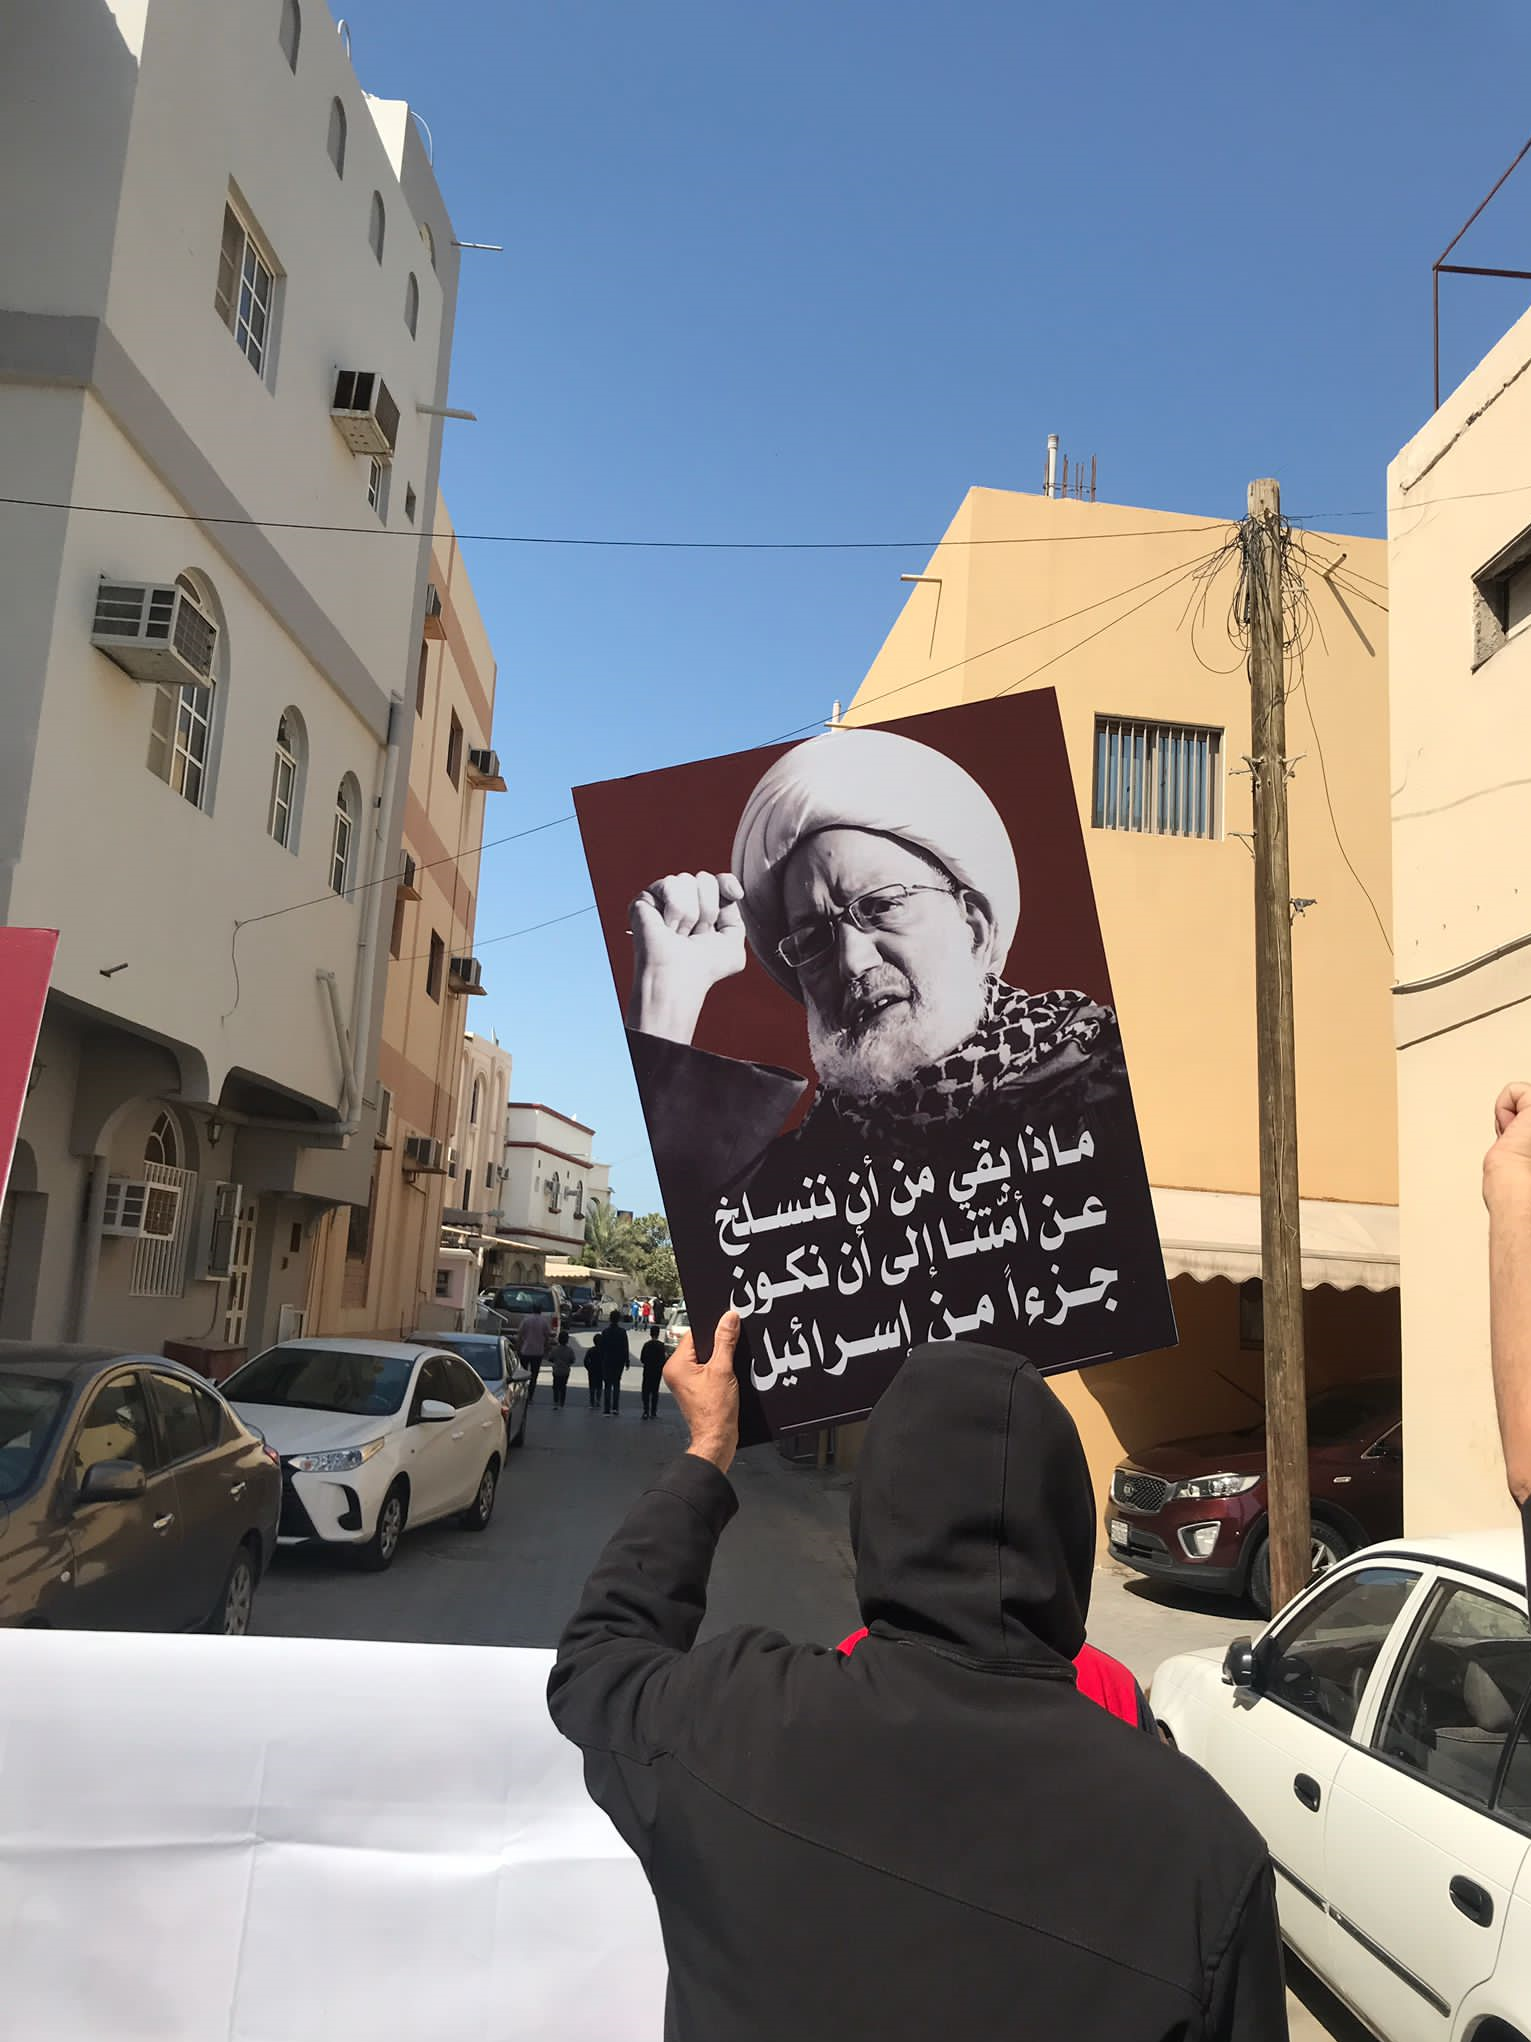 مردم بحرین پرچم رژیم صهیونیستی را لگدمال کردند + فیلم